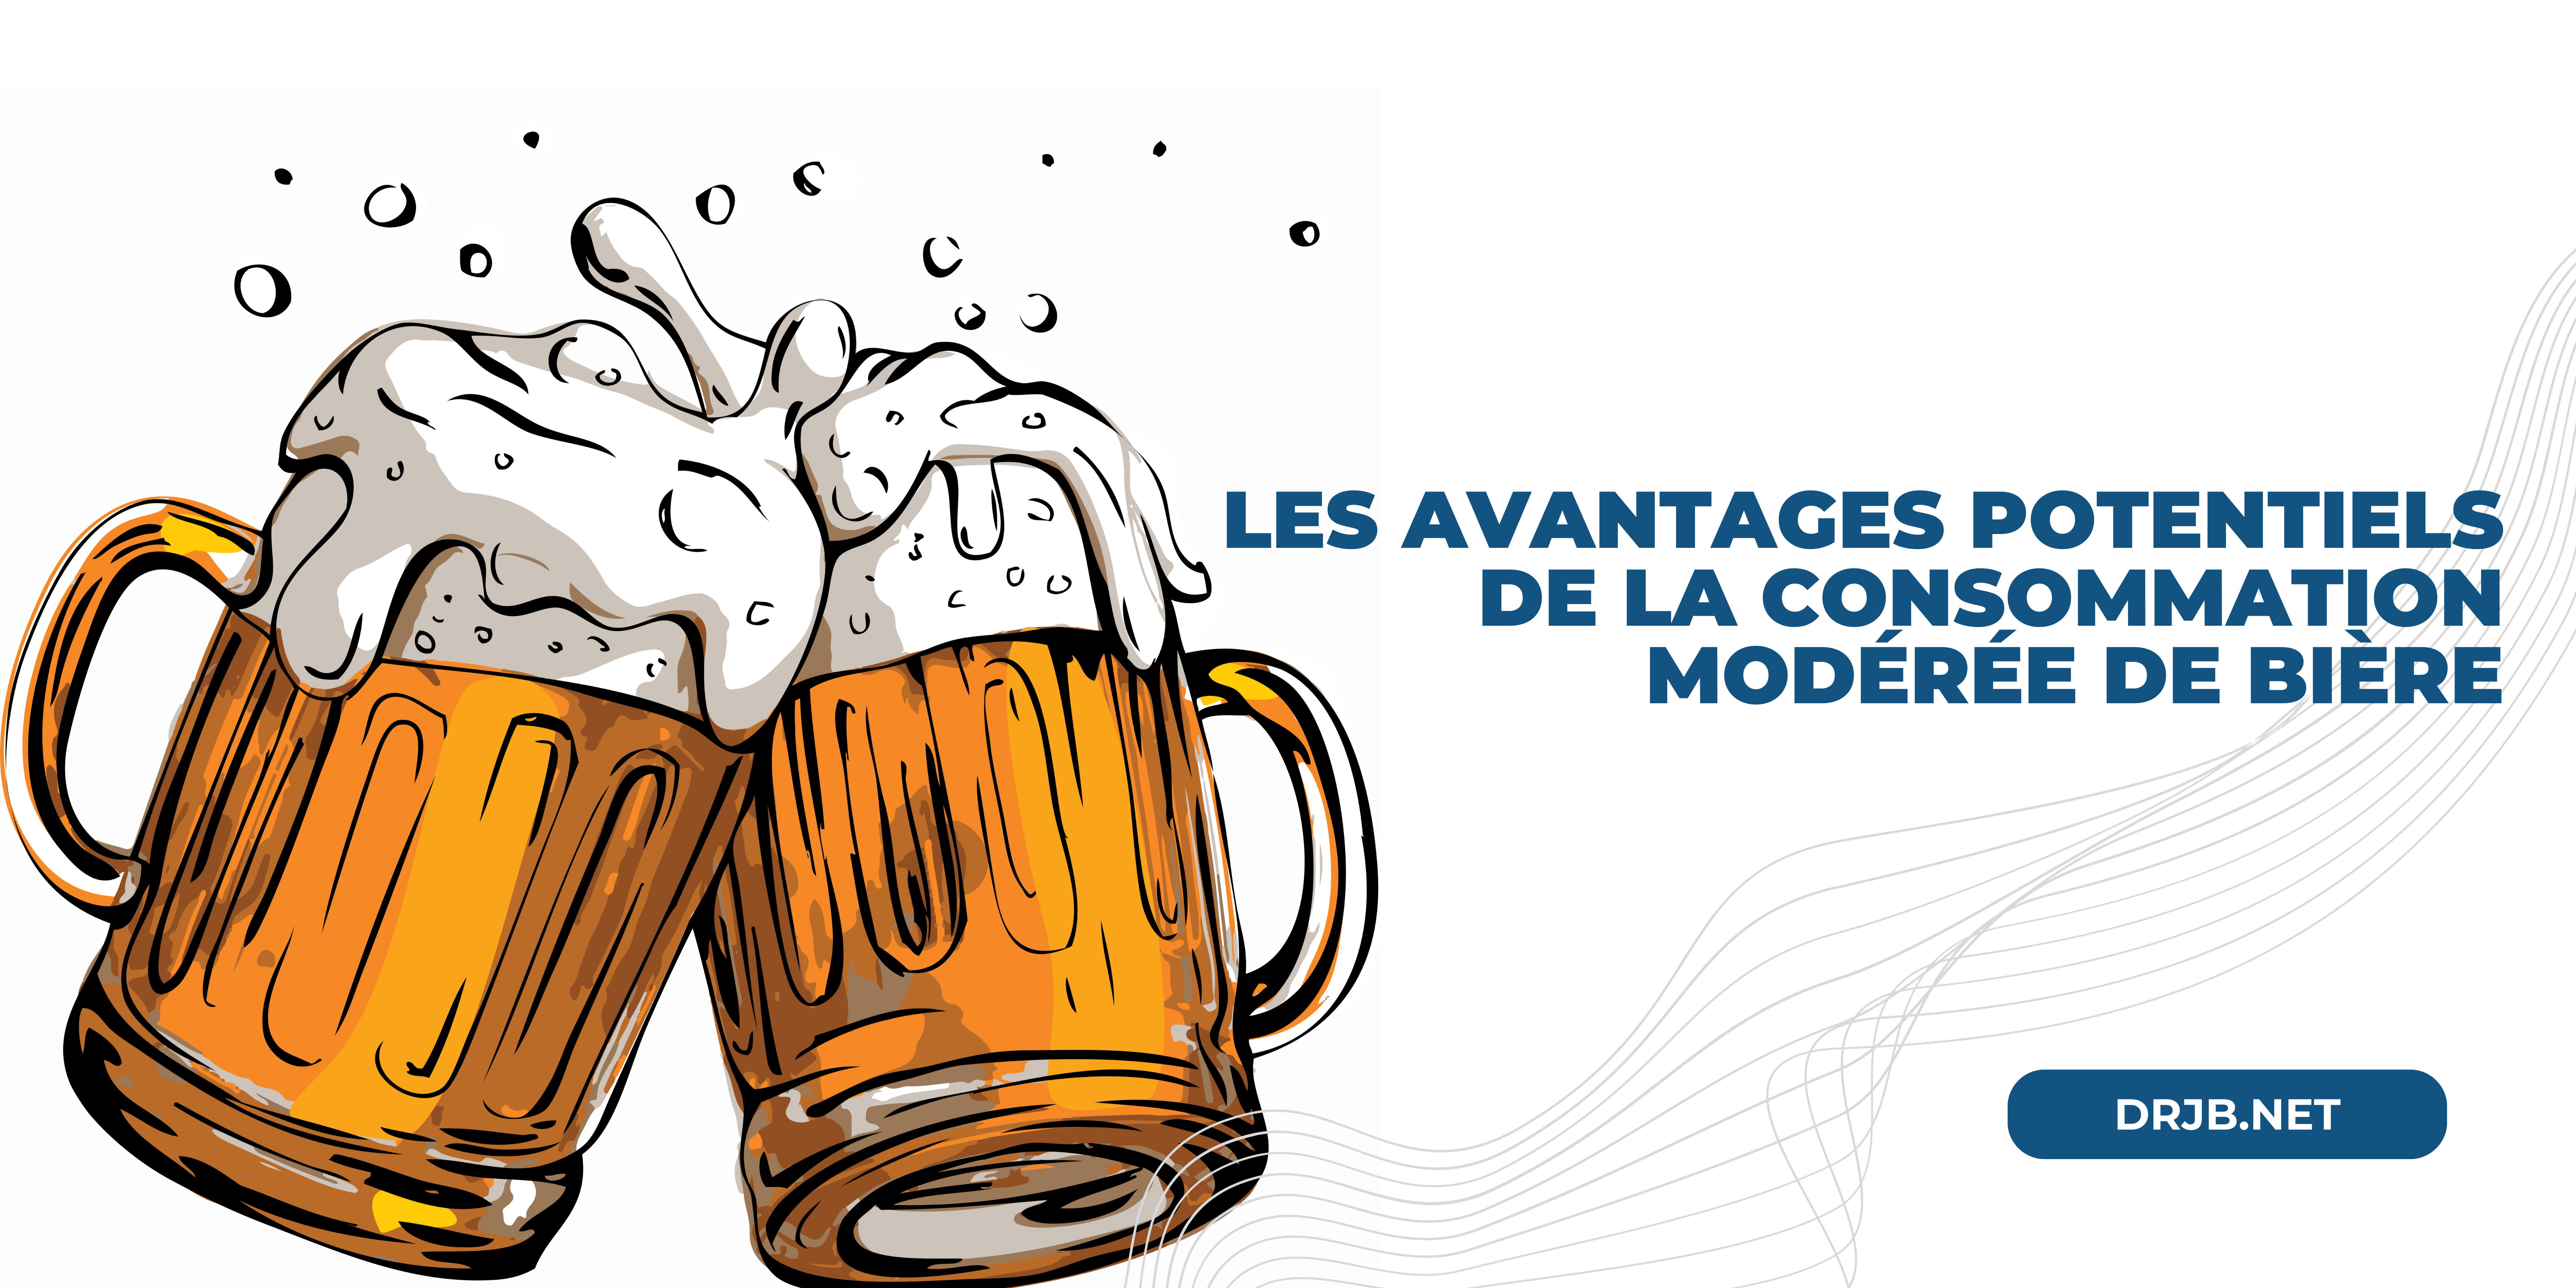 Photo of Les avantages potentiels de la consommation modérée de bière